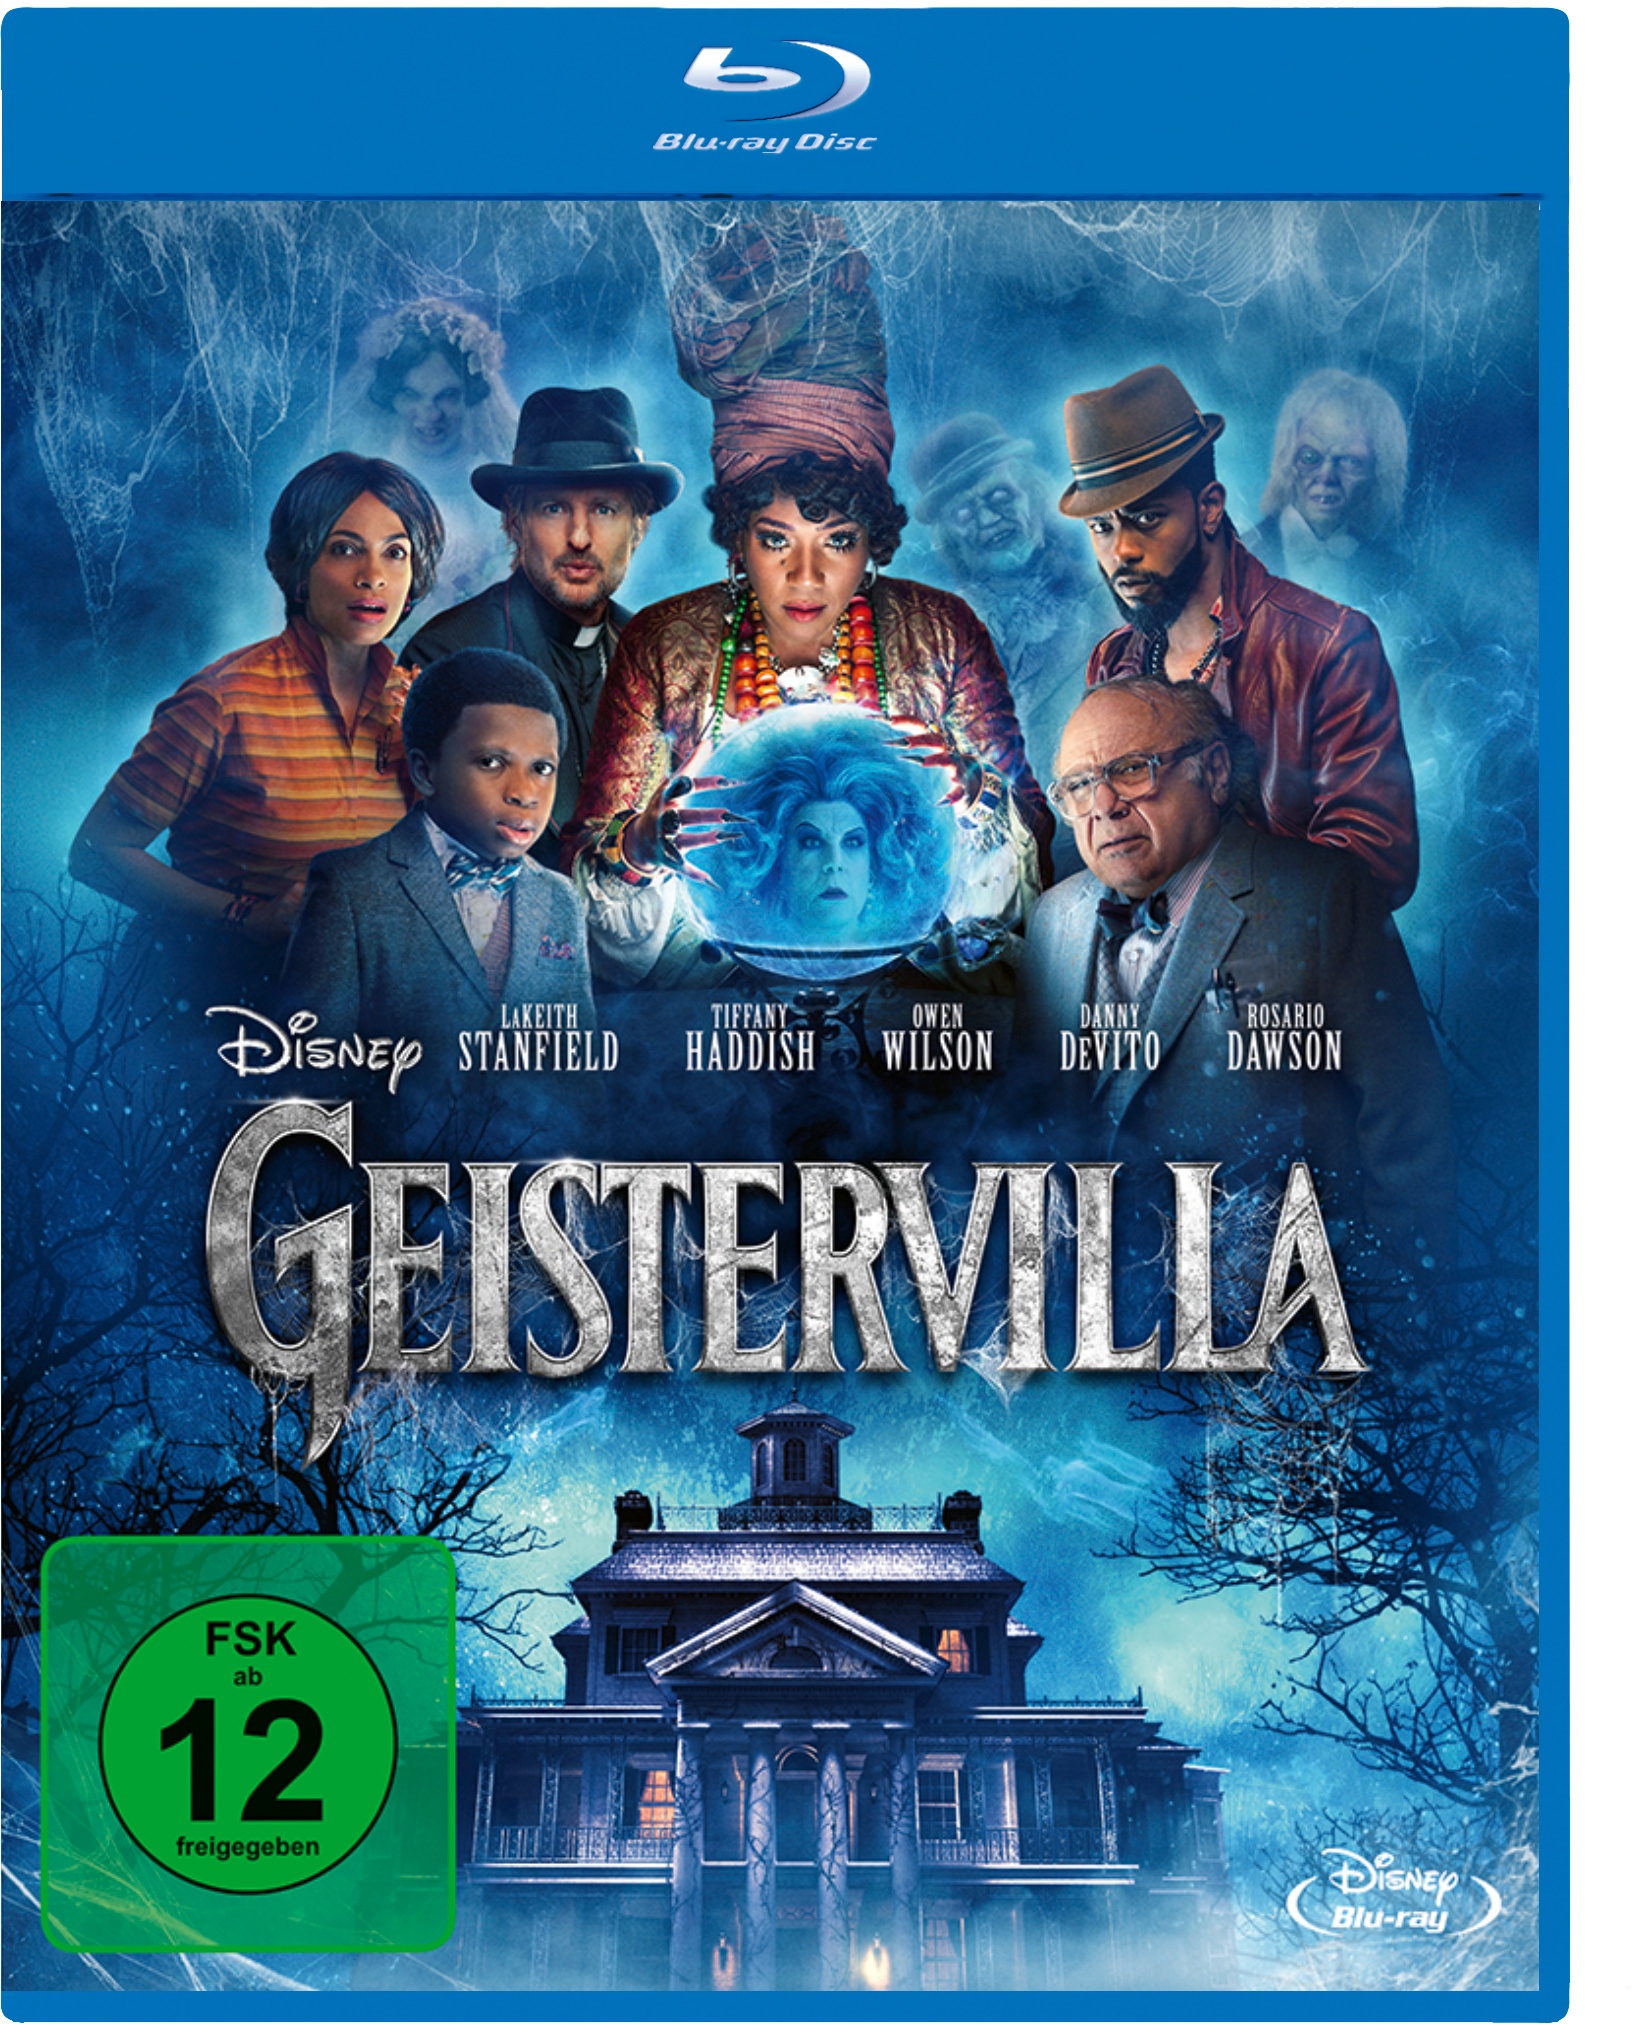 Geistervilla (Blu-ray)